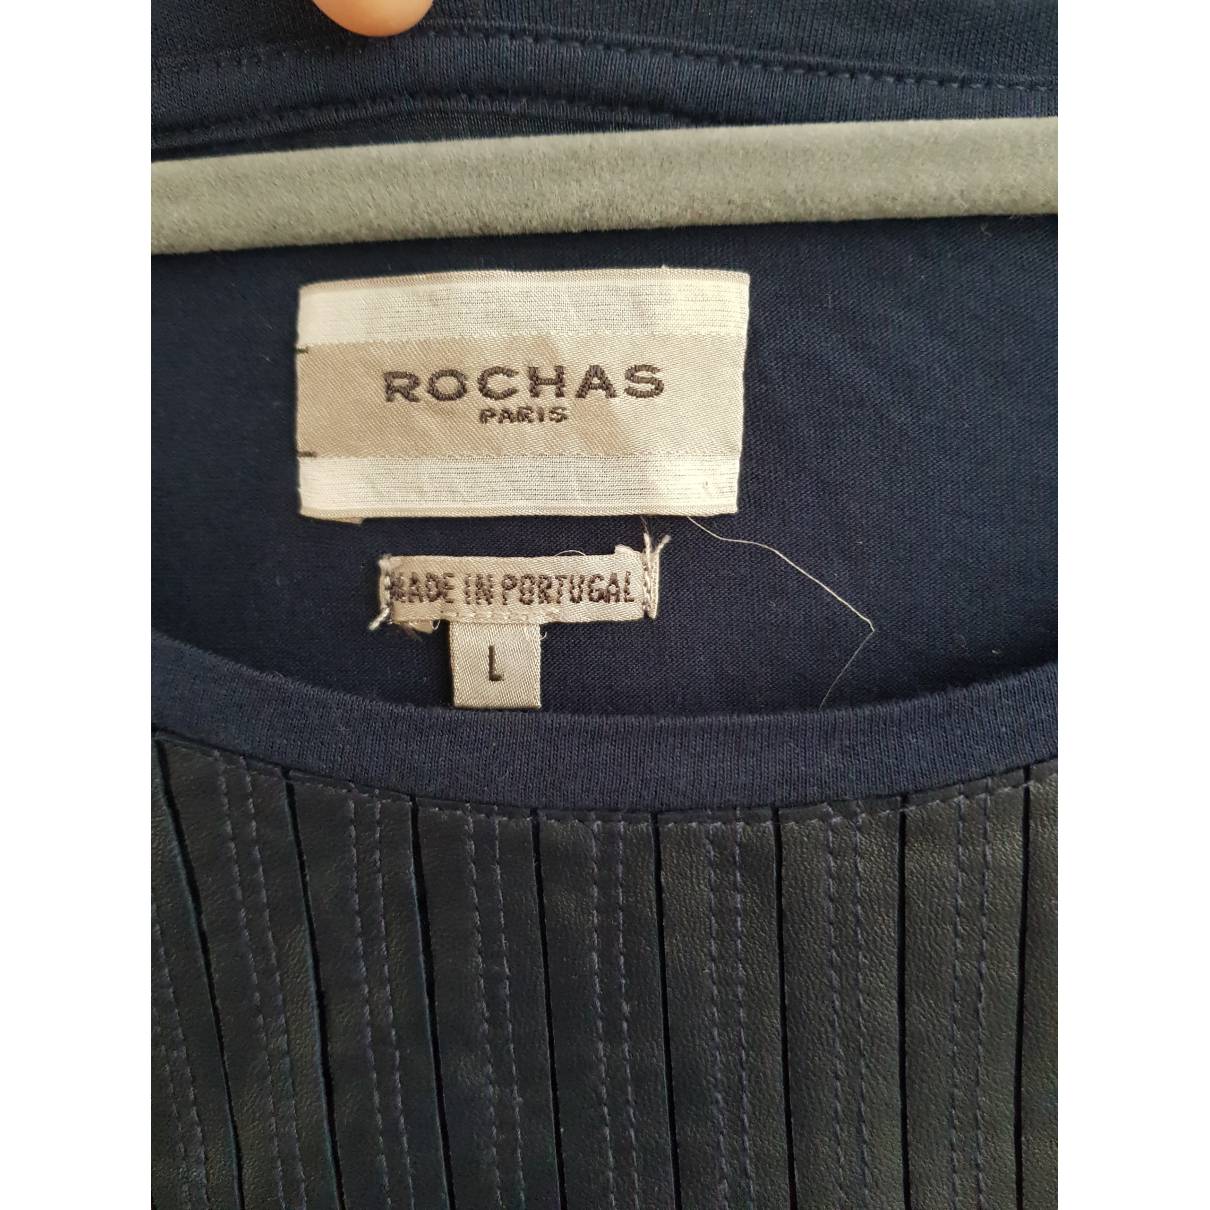 Buy Rochas Knitwear online